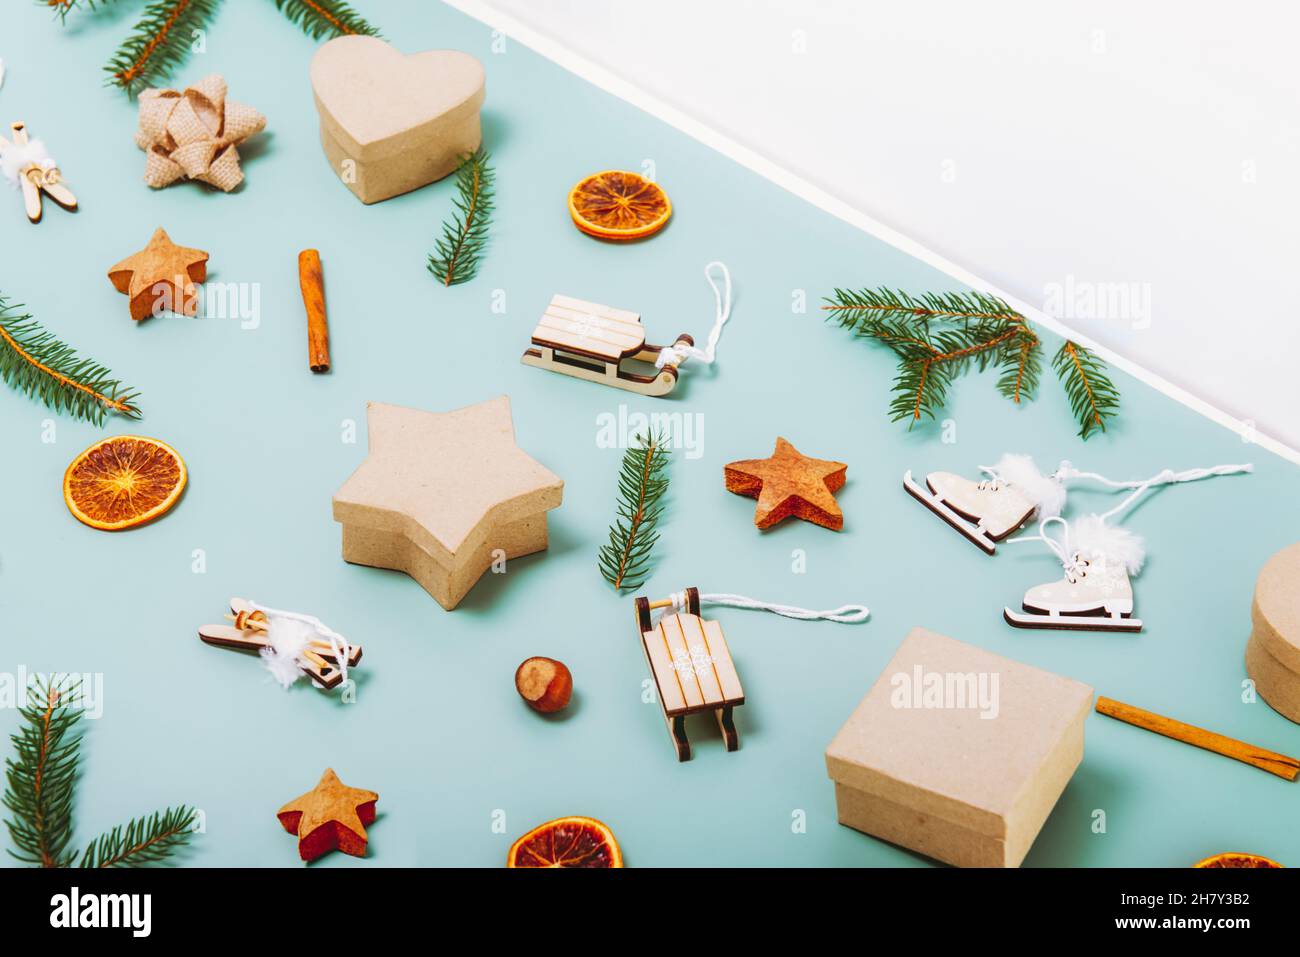 Weihnachten Seitenansicht grüner Hintergrund mit Tannenzweigen, umweltfreundlichen Pappkartons, Holzspielzeug, Zimt, getrockneten Orangen und weißem Dreieck Cop Stockfoto